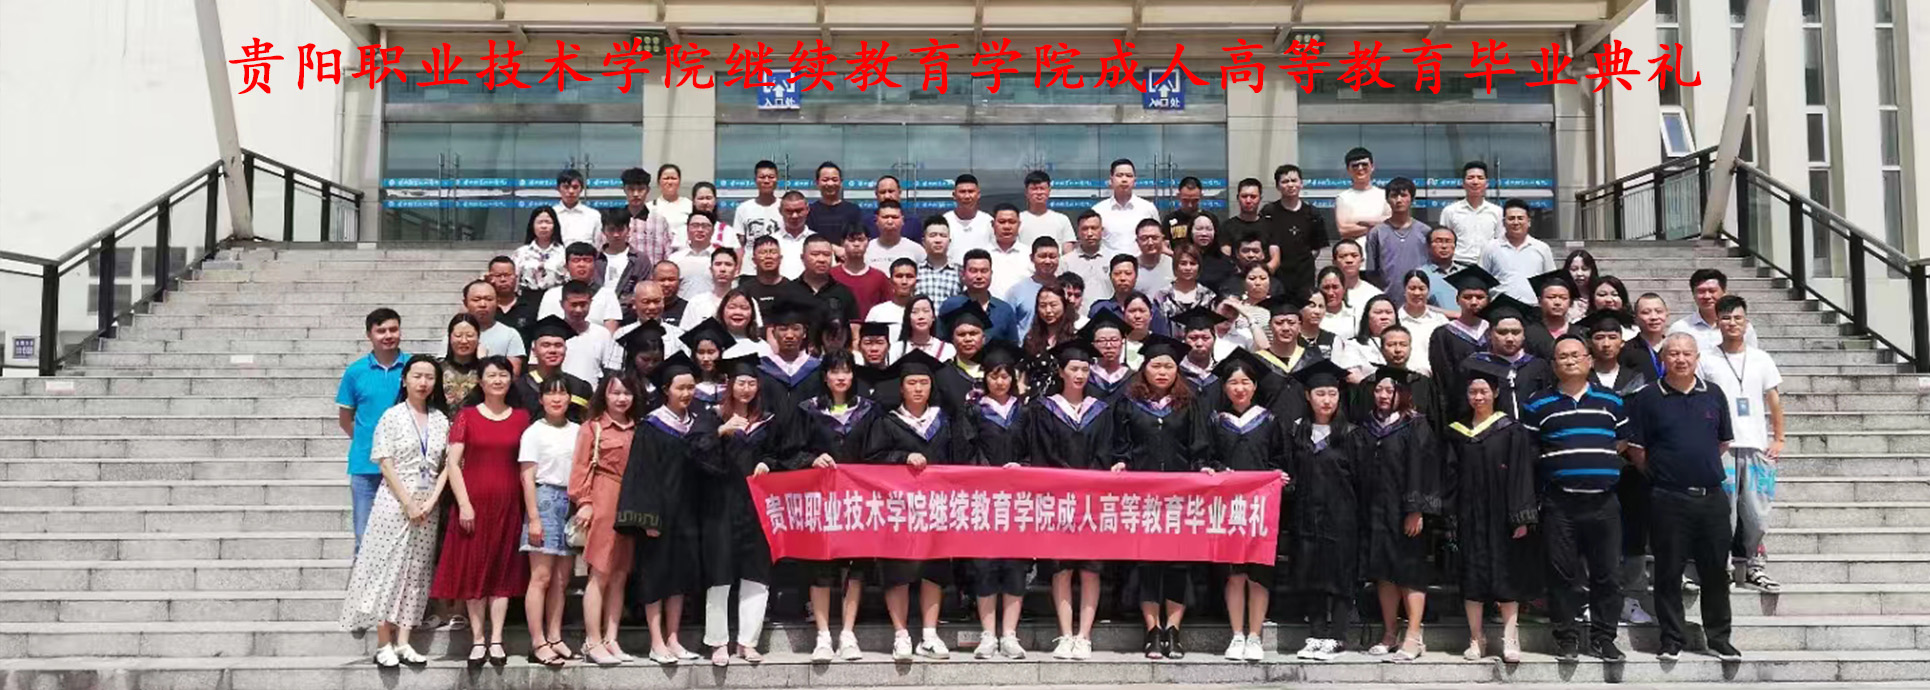 贵阳职业技术学院继续教育学院成人高等教育毕业典礼